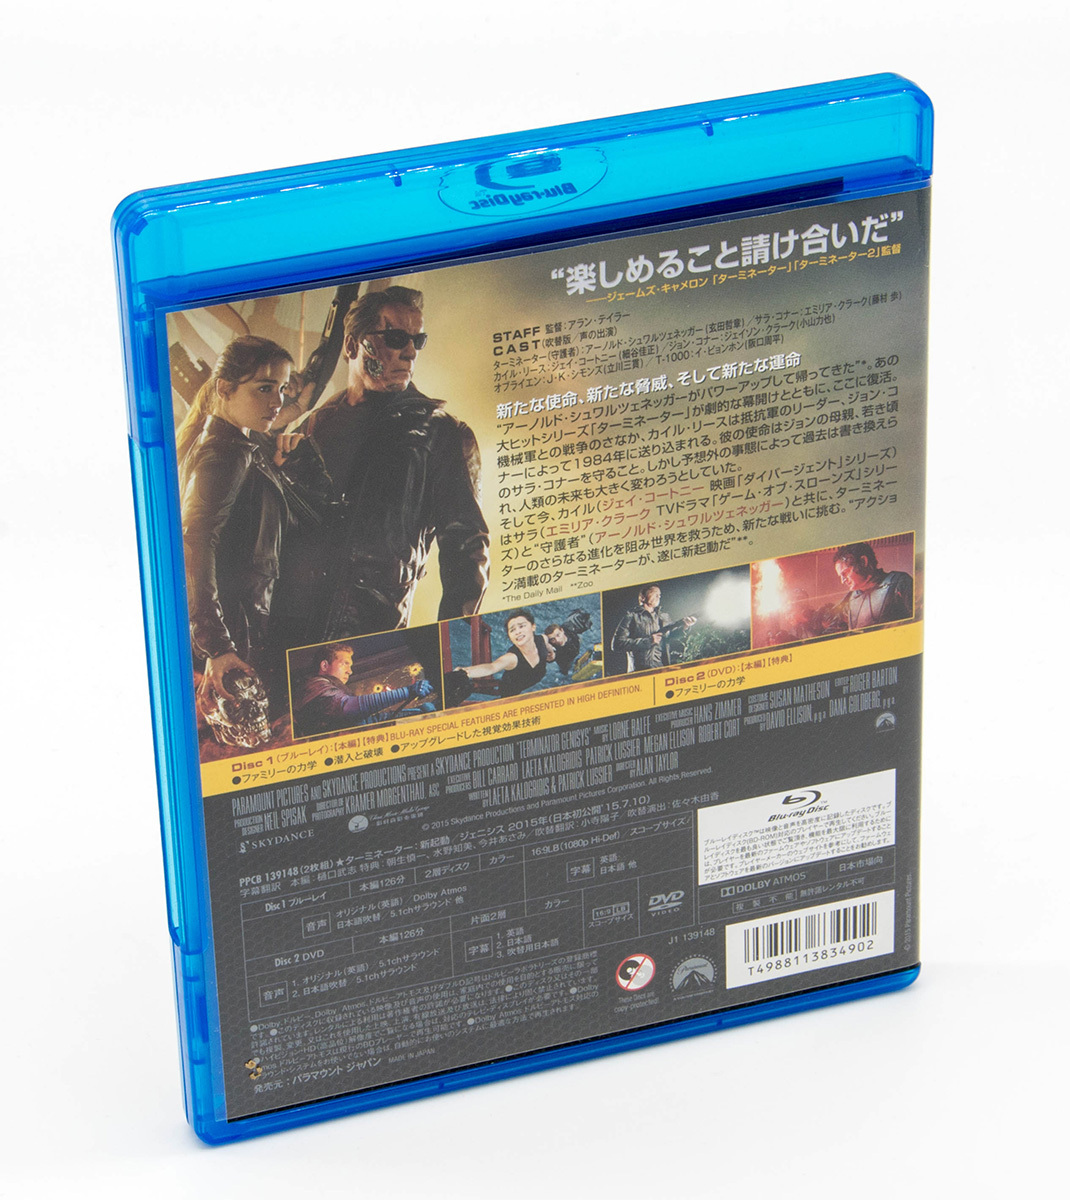 ターミネーター: 新起動 ジェニシス Terminator Genisys Blu-ray+DVD アーノルド・シュワルツェネッガー ジェイソン・クラーク 中古 セル版_画像2